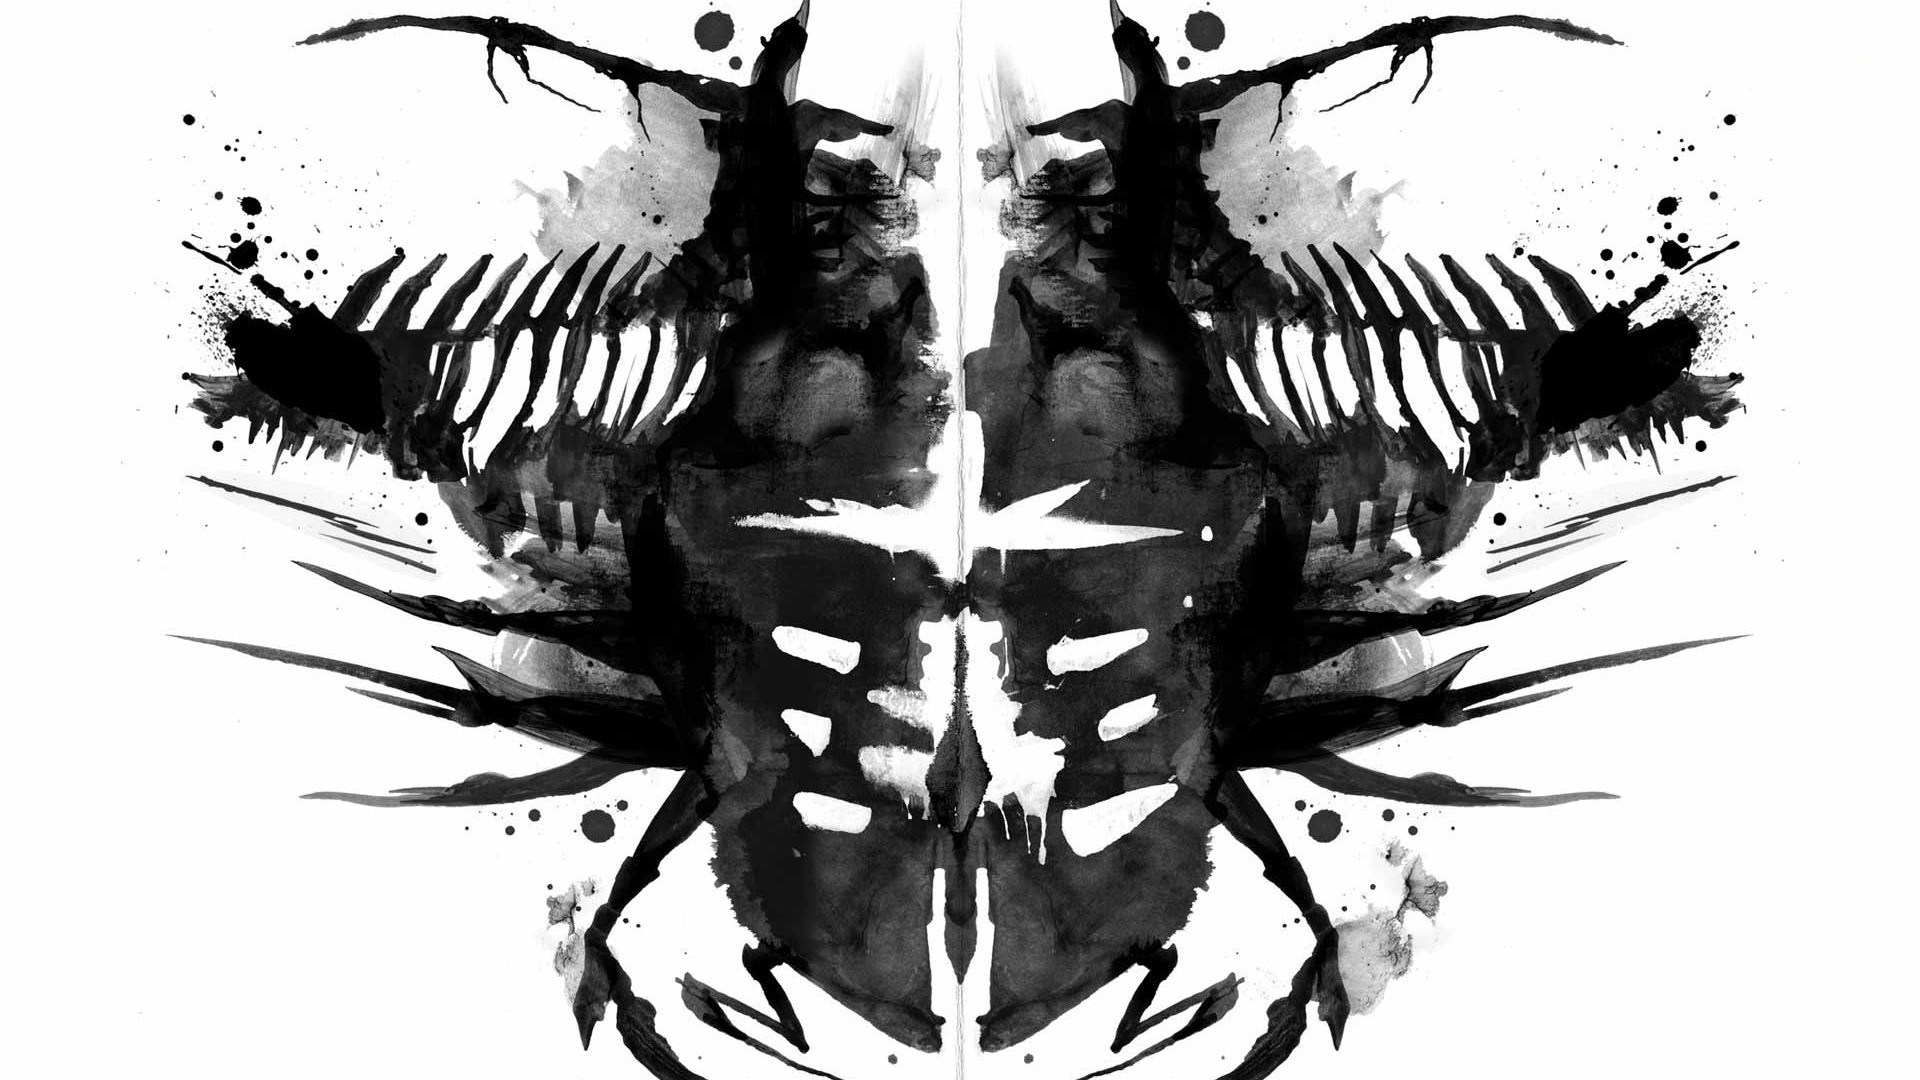 Video Games Dead Space Isaac Clarke Artwork Rorschach Test 1920x1080